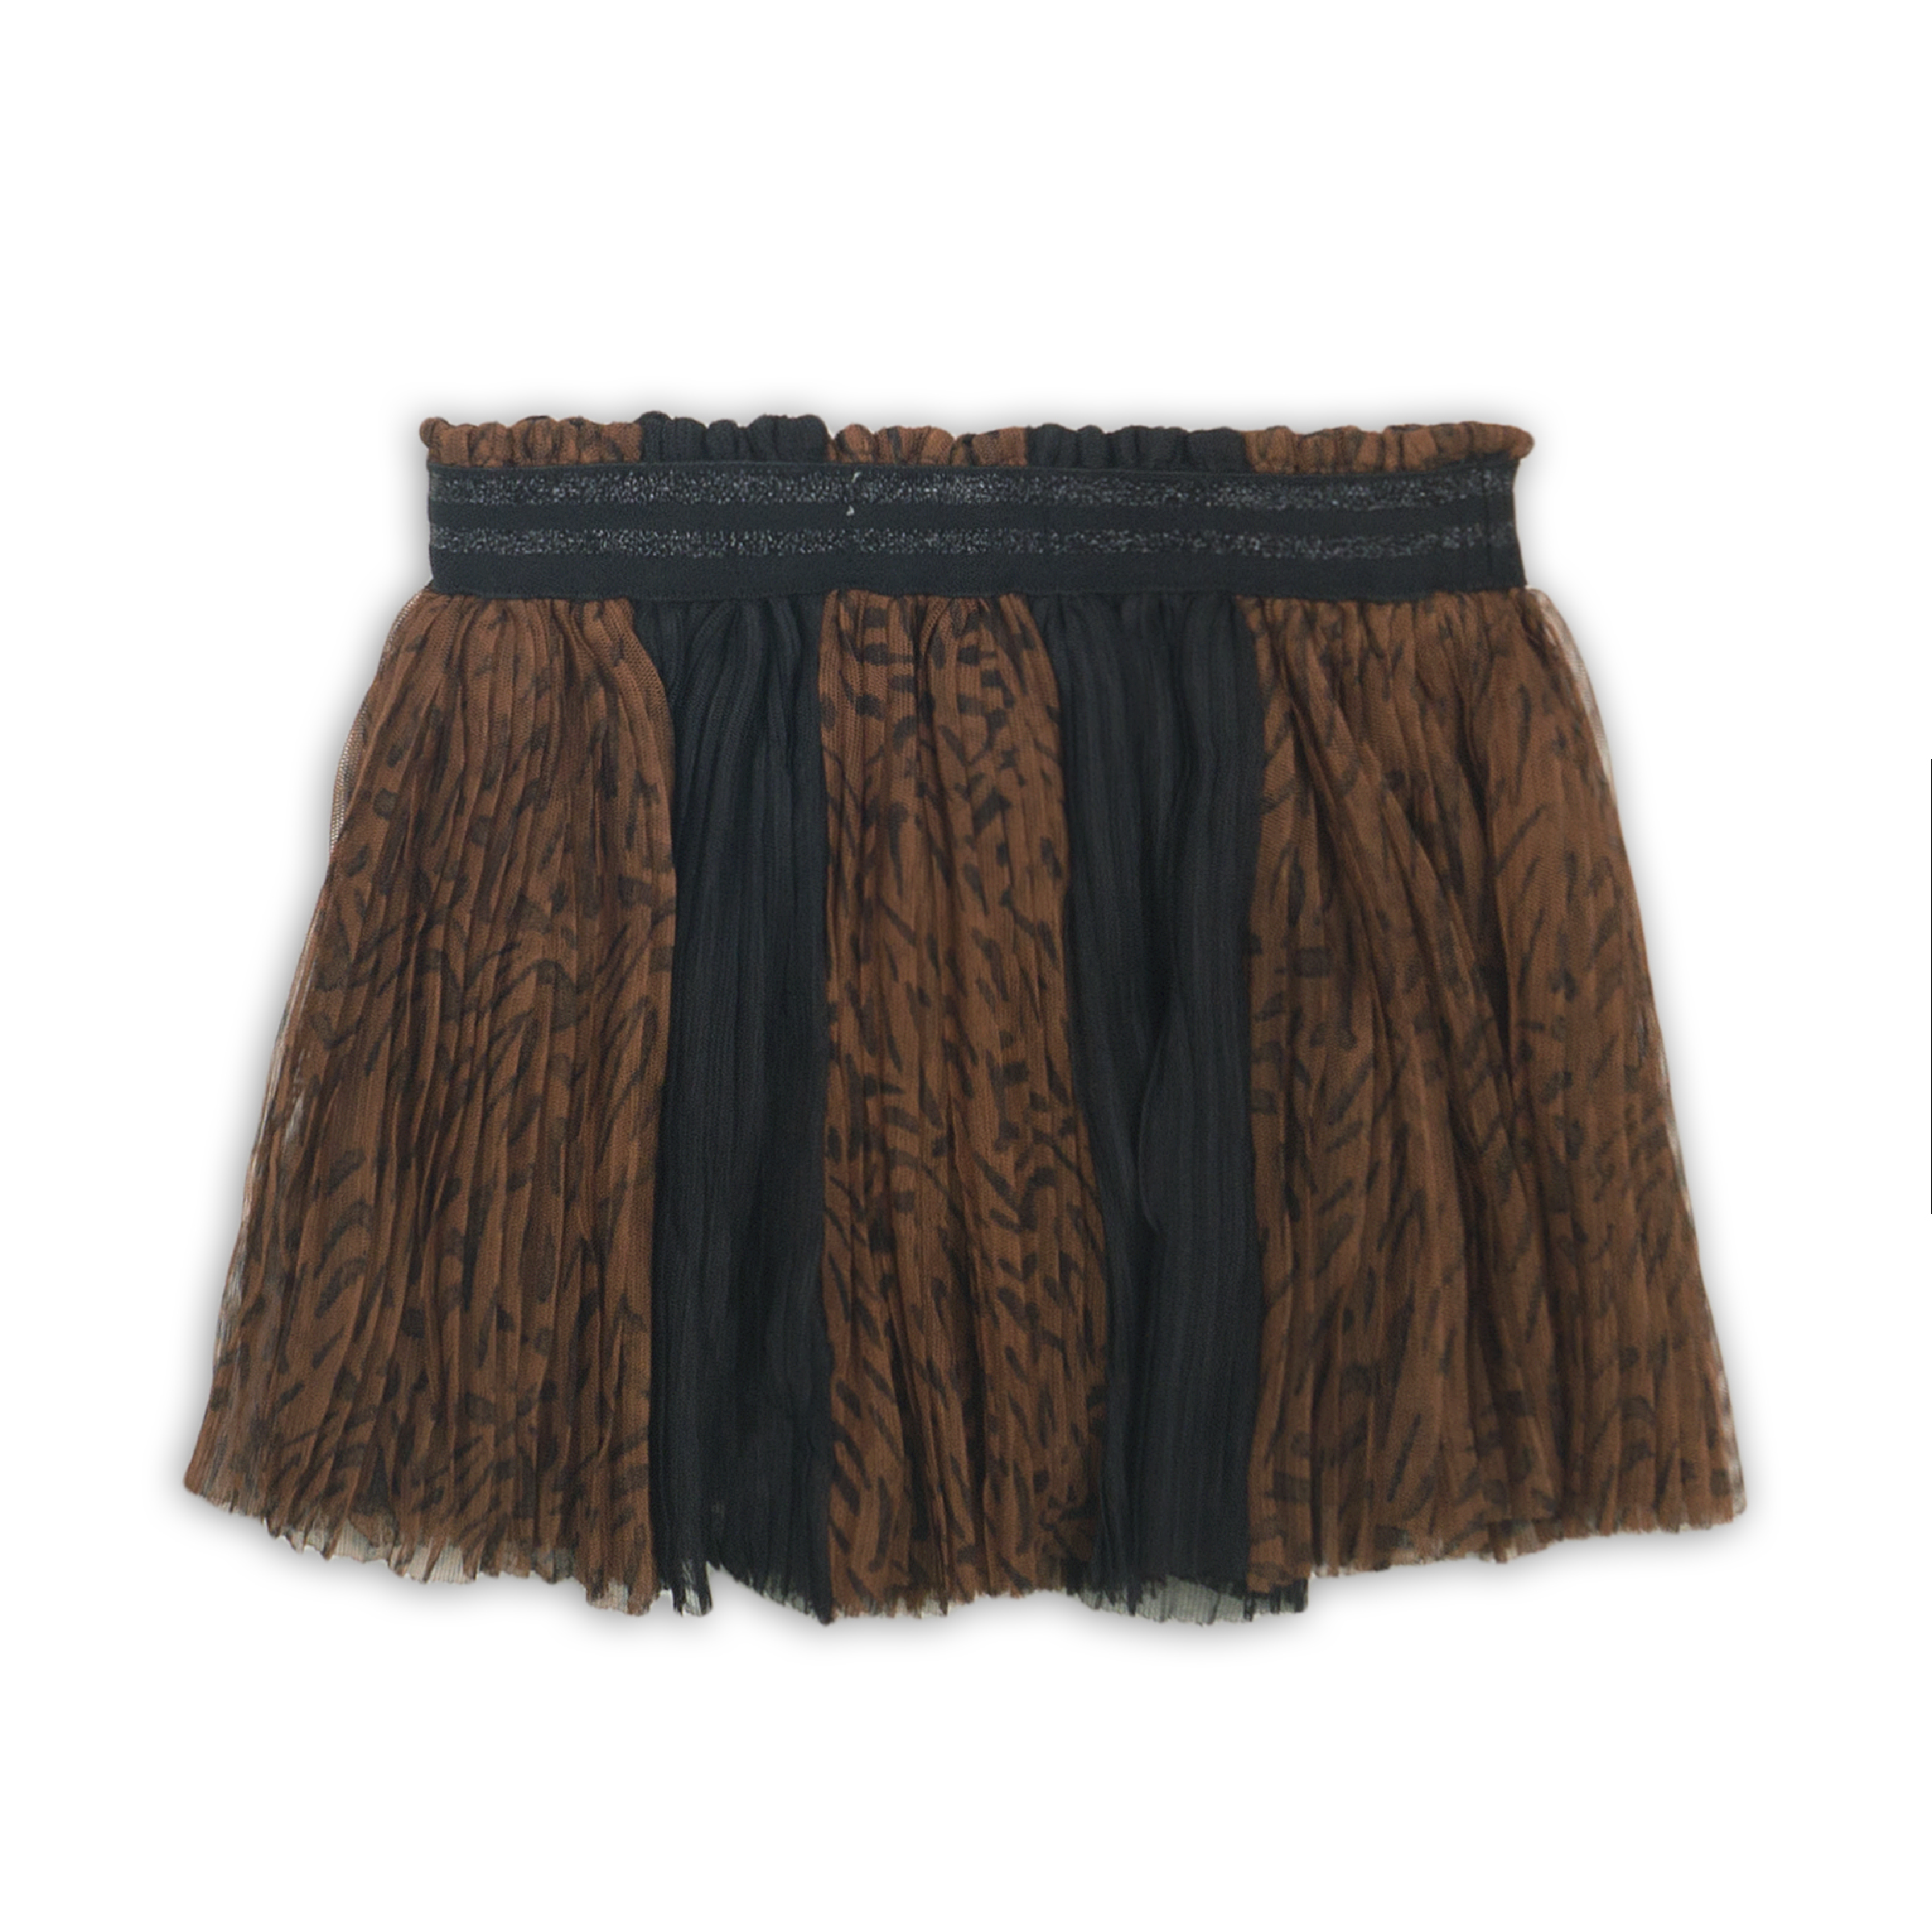 Meisjes Skirt van Koko Noko in de kleur  Black + brown aop in maat 86.